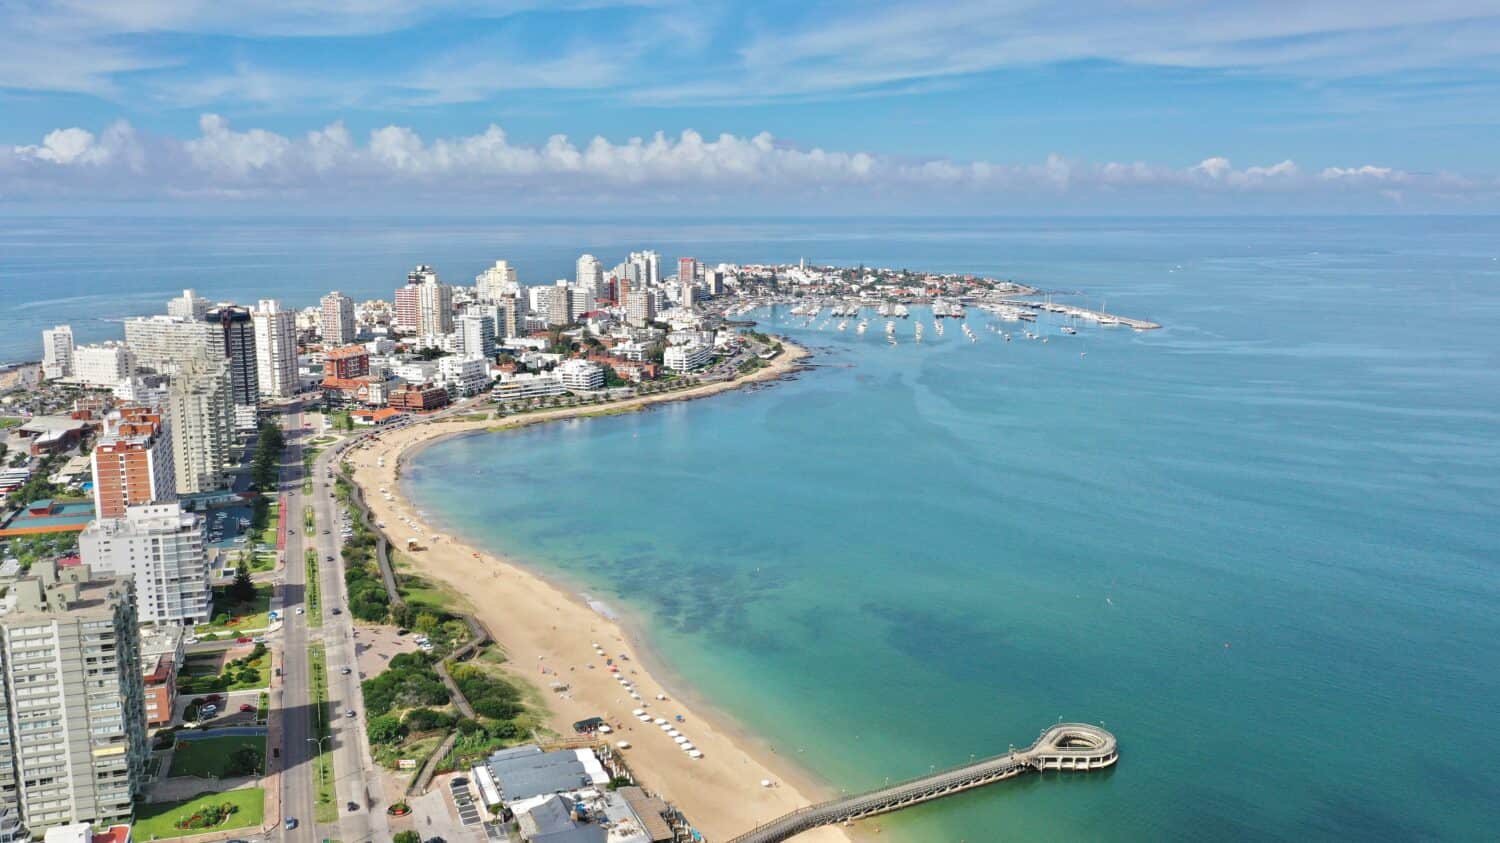 Splendida vista panoramica sul viale principale di Punta del Este e sul mare.  Punta del Este, Uruguay